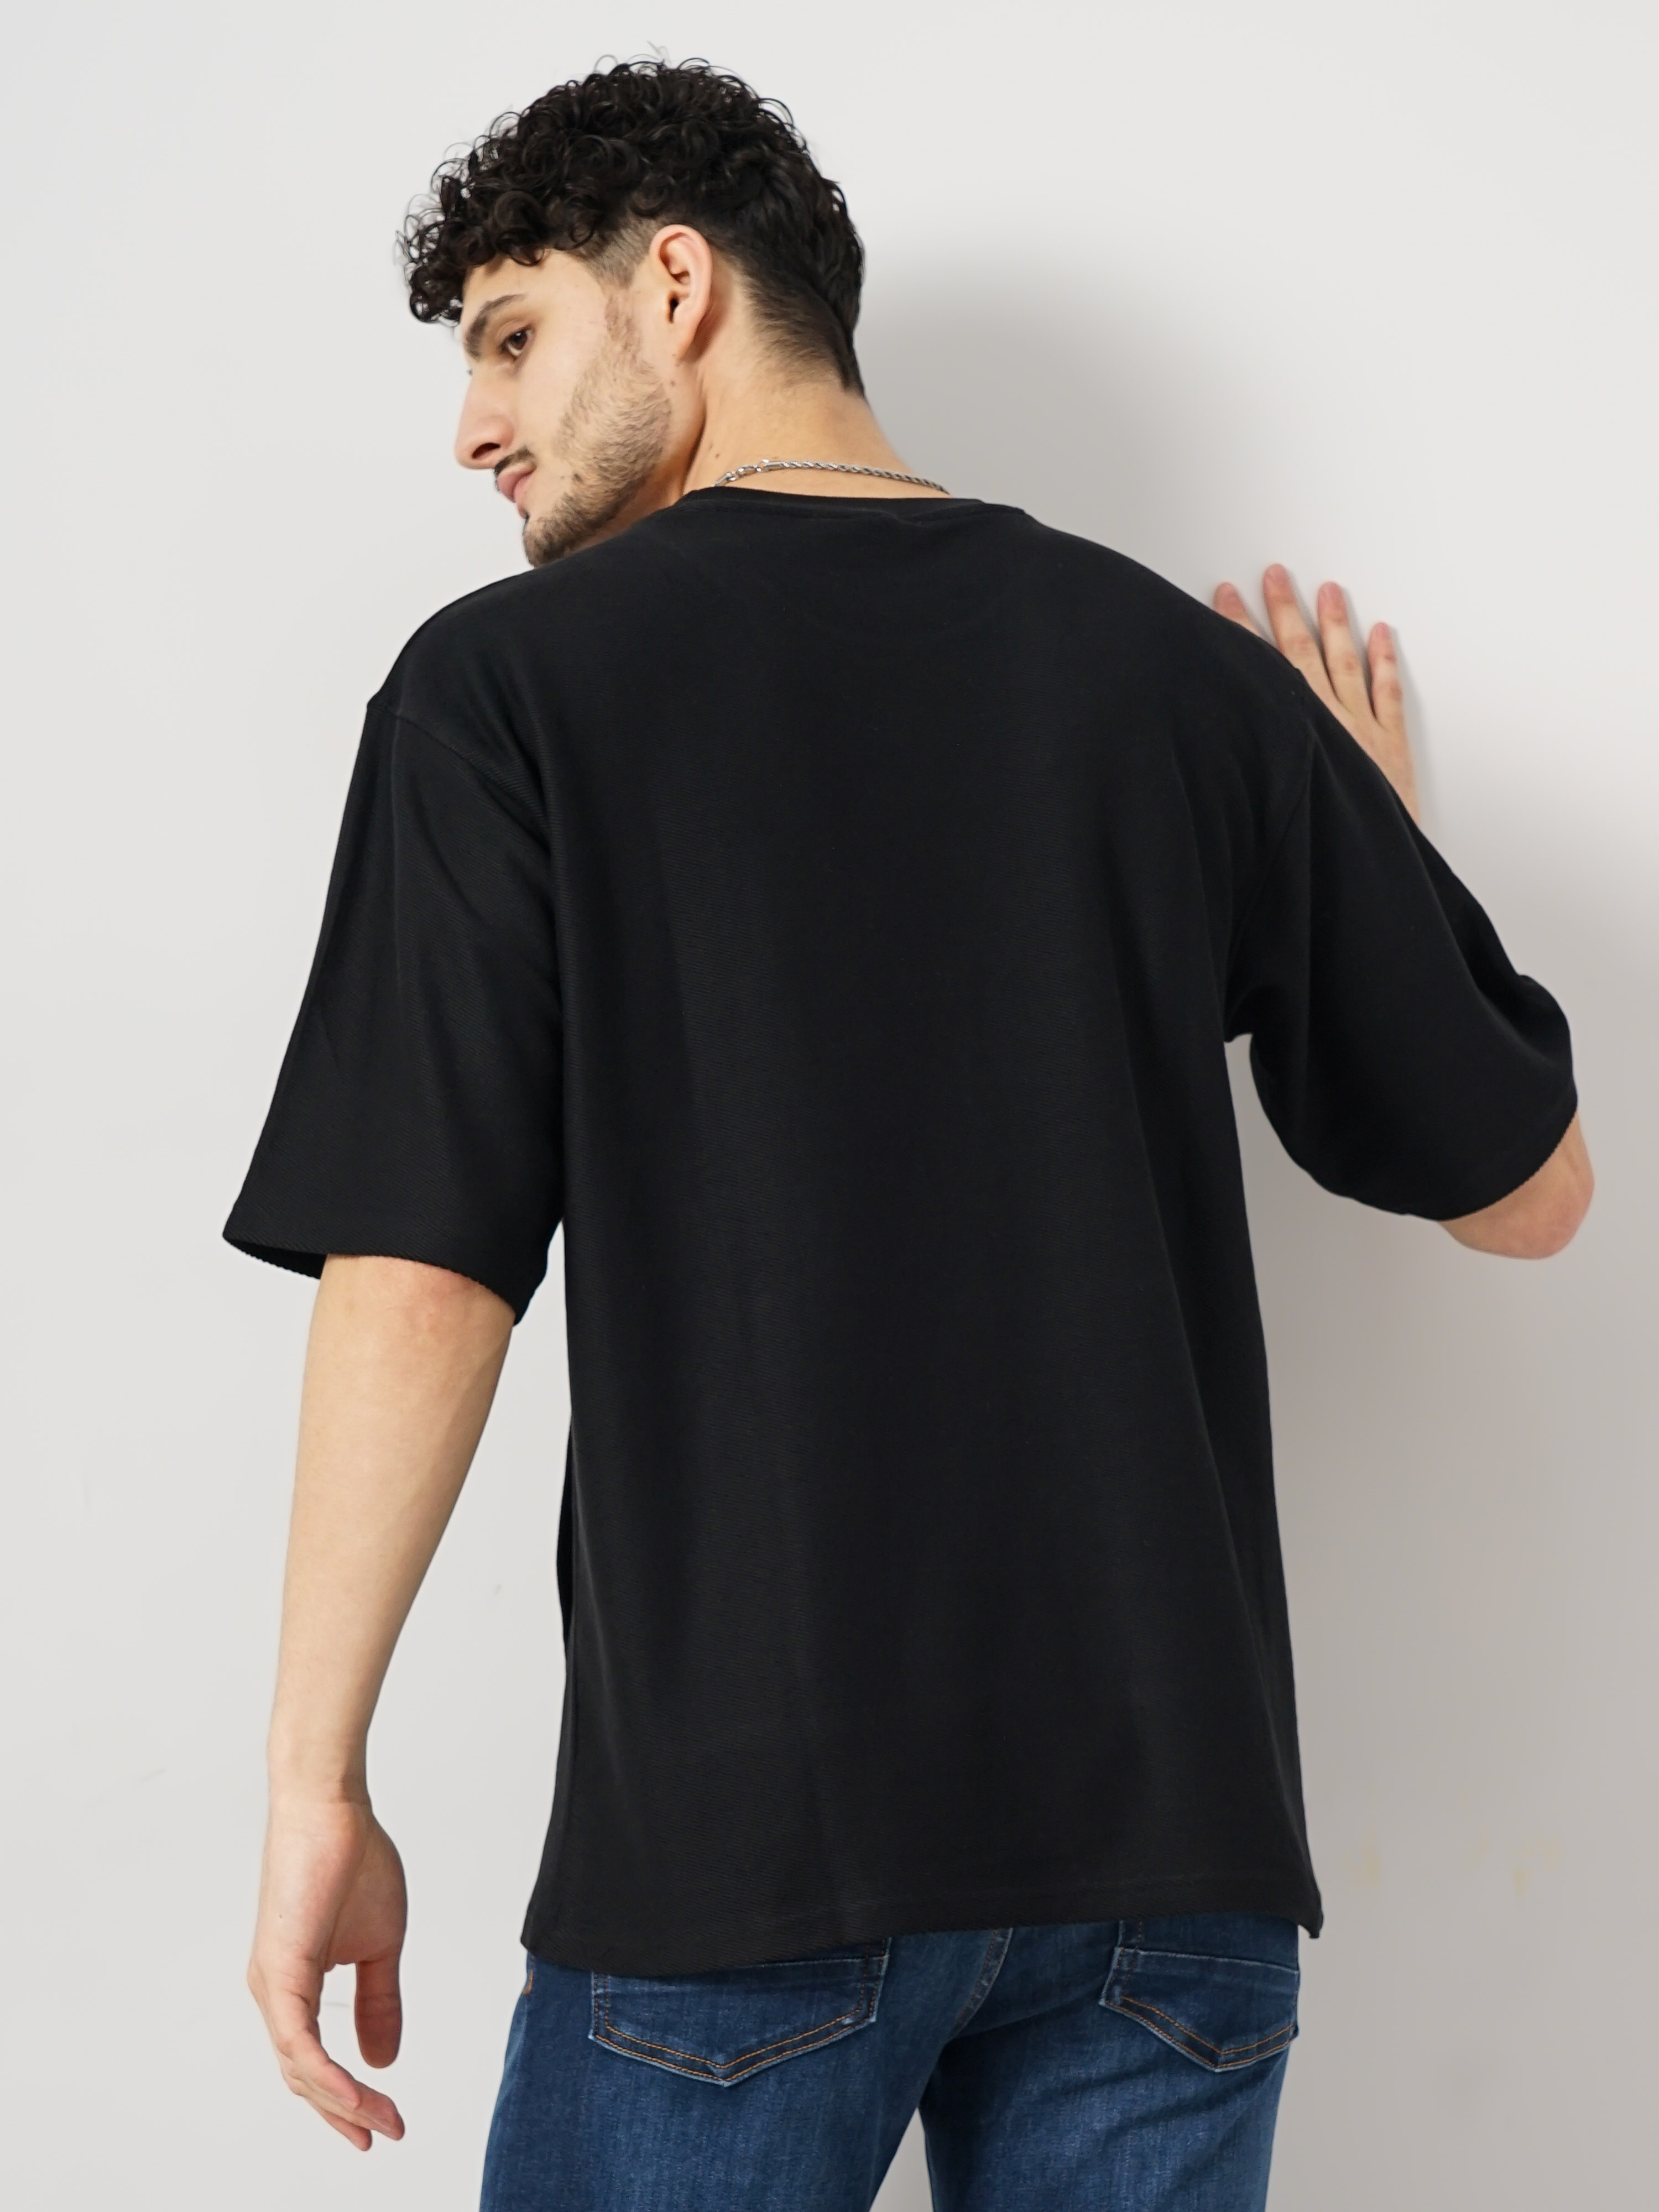 Celio Men's Solid Black Half Sleeve Round Neck Structured Tshirt